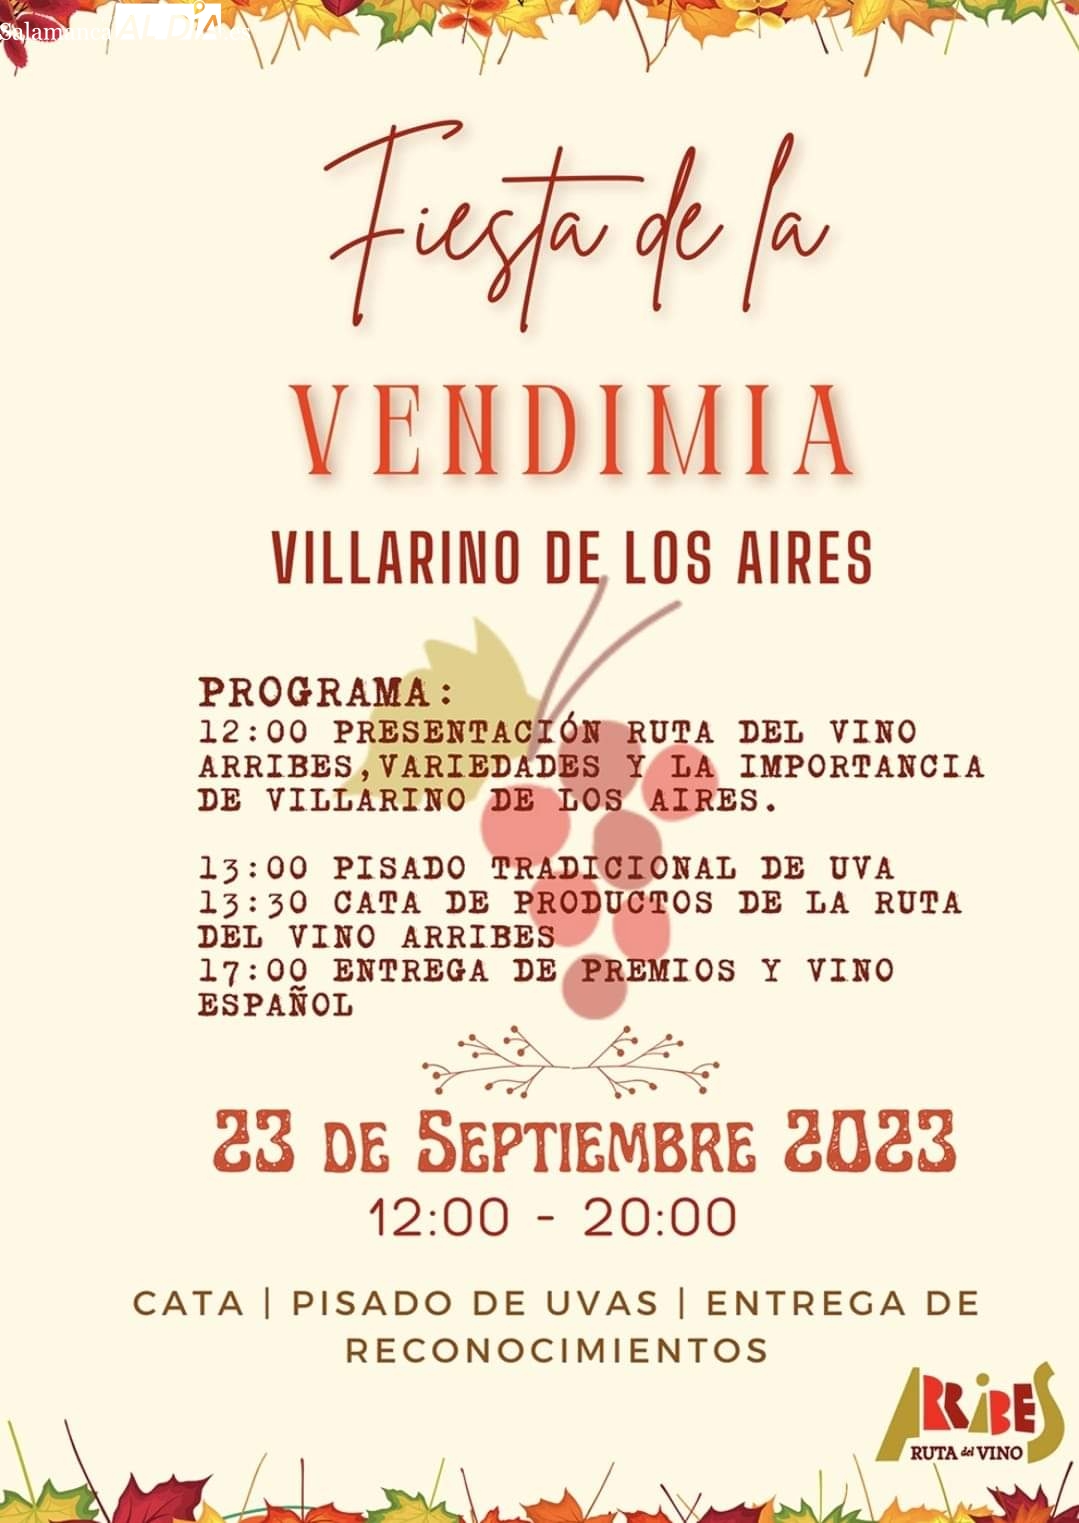 Foto 2 - La Ruta del Vino Arribes celebrará la ‘Fiesta de la Vendimia’ en Villarino